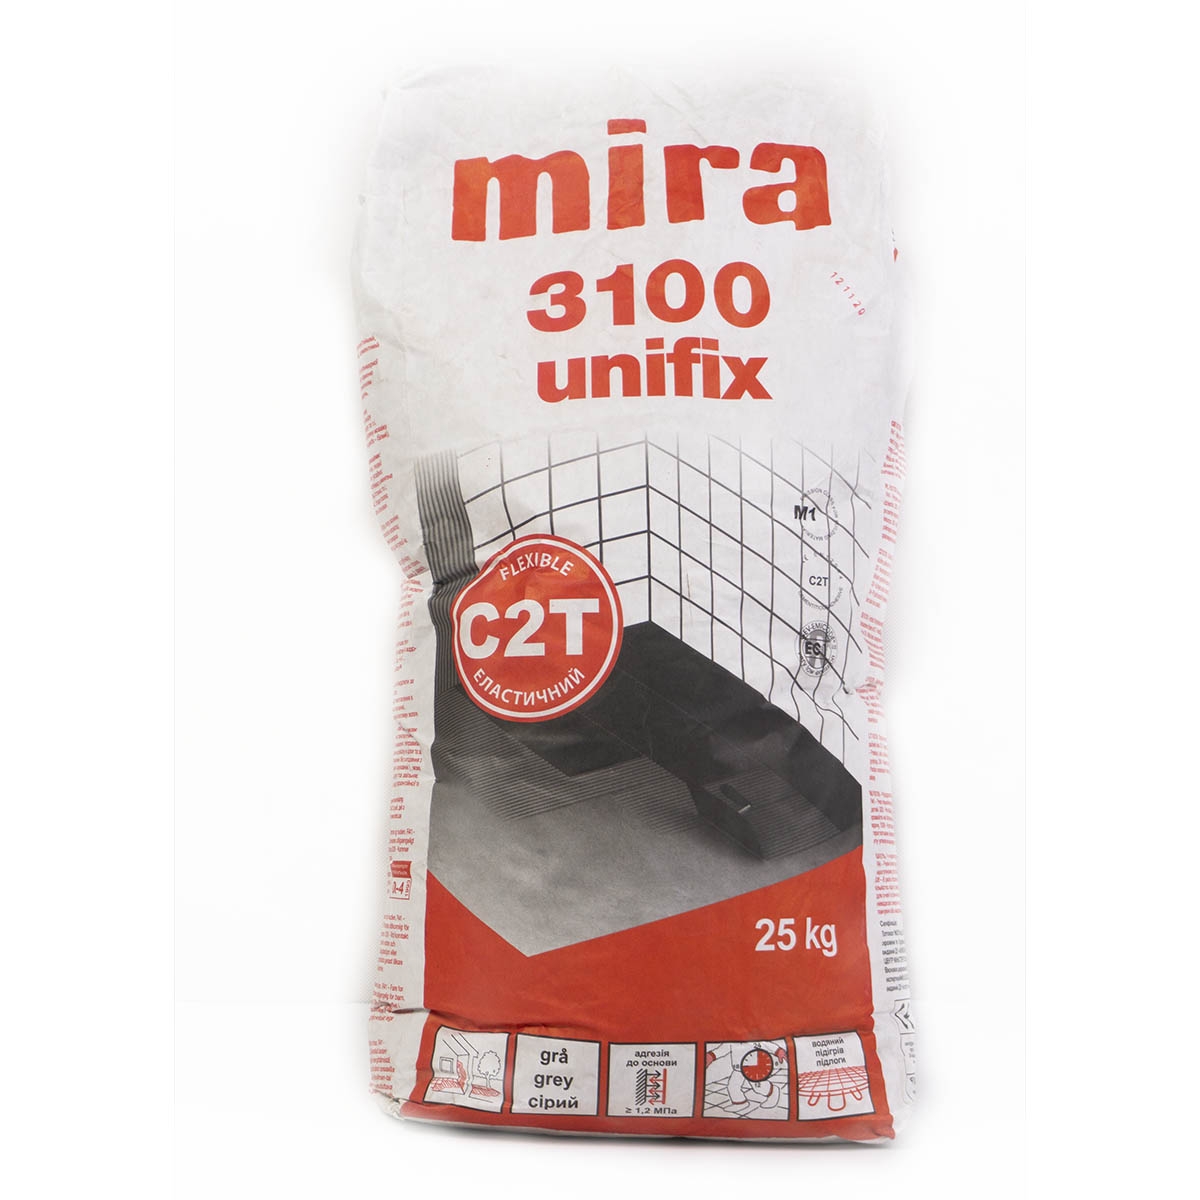 Клей для плитки mira 3100 unifix серый (25кг) 000007119 by Mira (Дания) color Серый